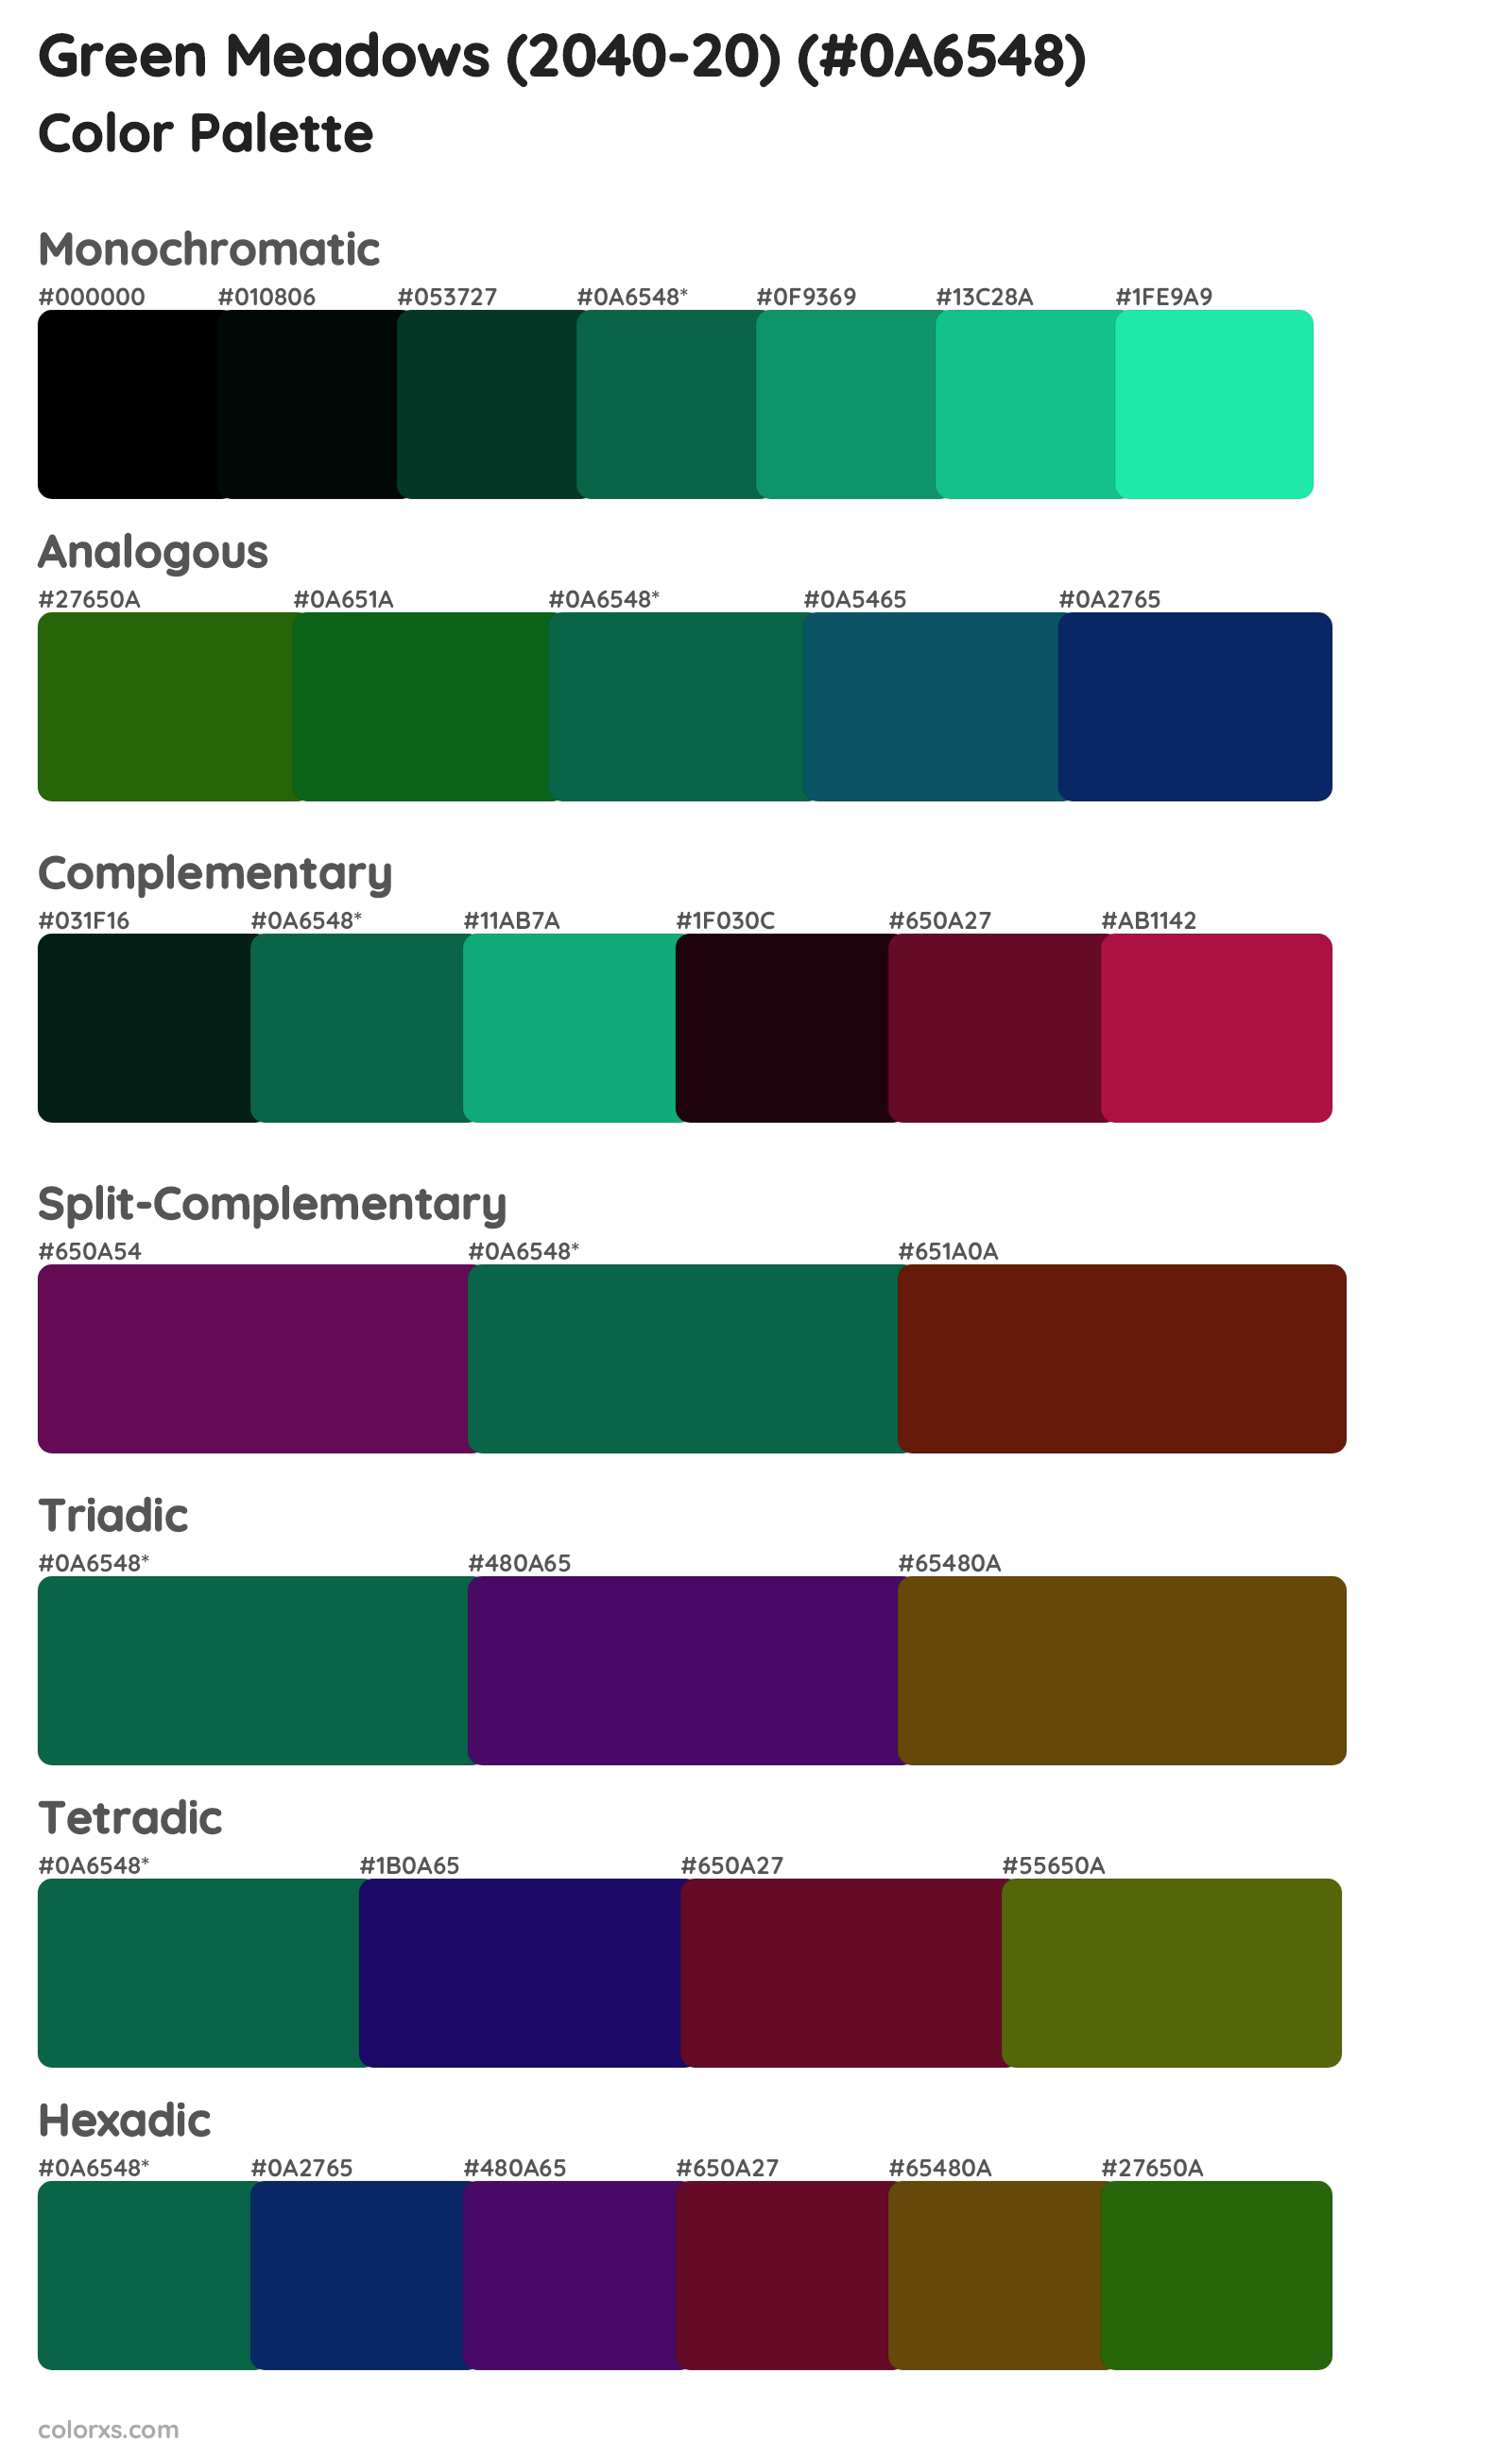 Green Meadows (2040-20) Color Scheme Palettes